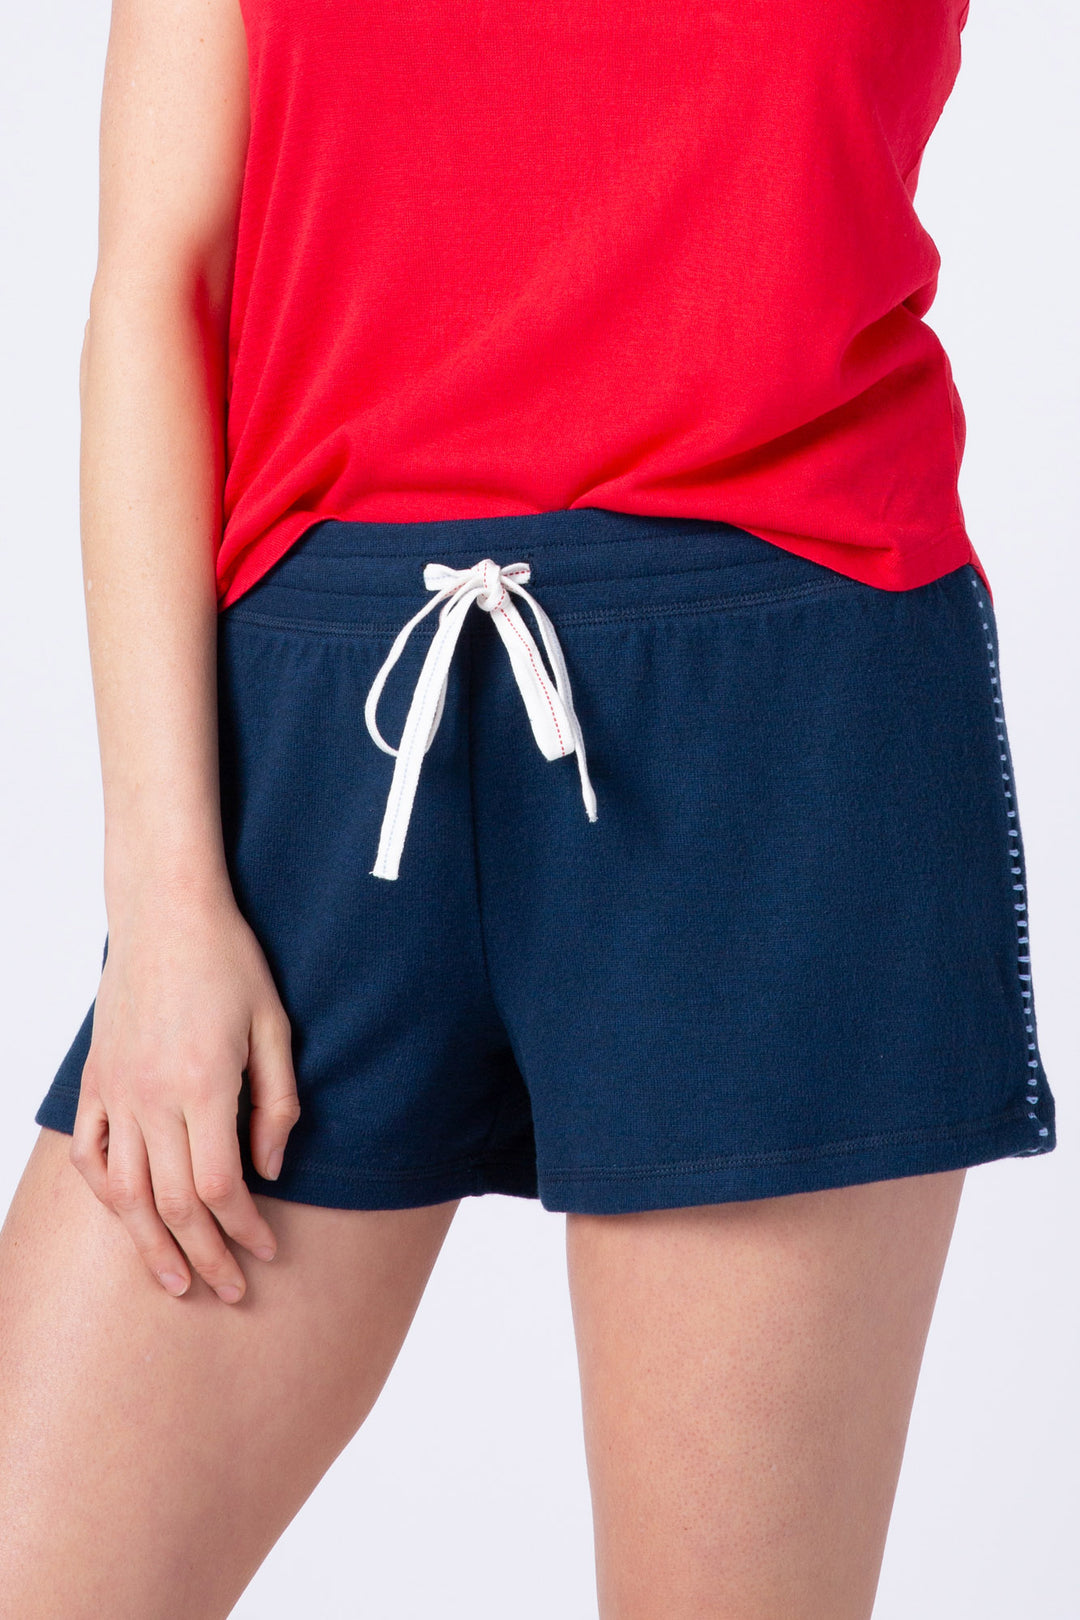 Women's navy blue lounge short w/white & red whipstitching & tie waist.